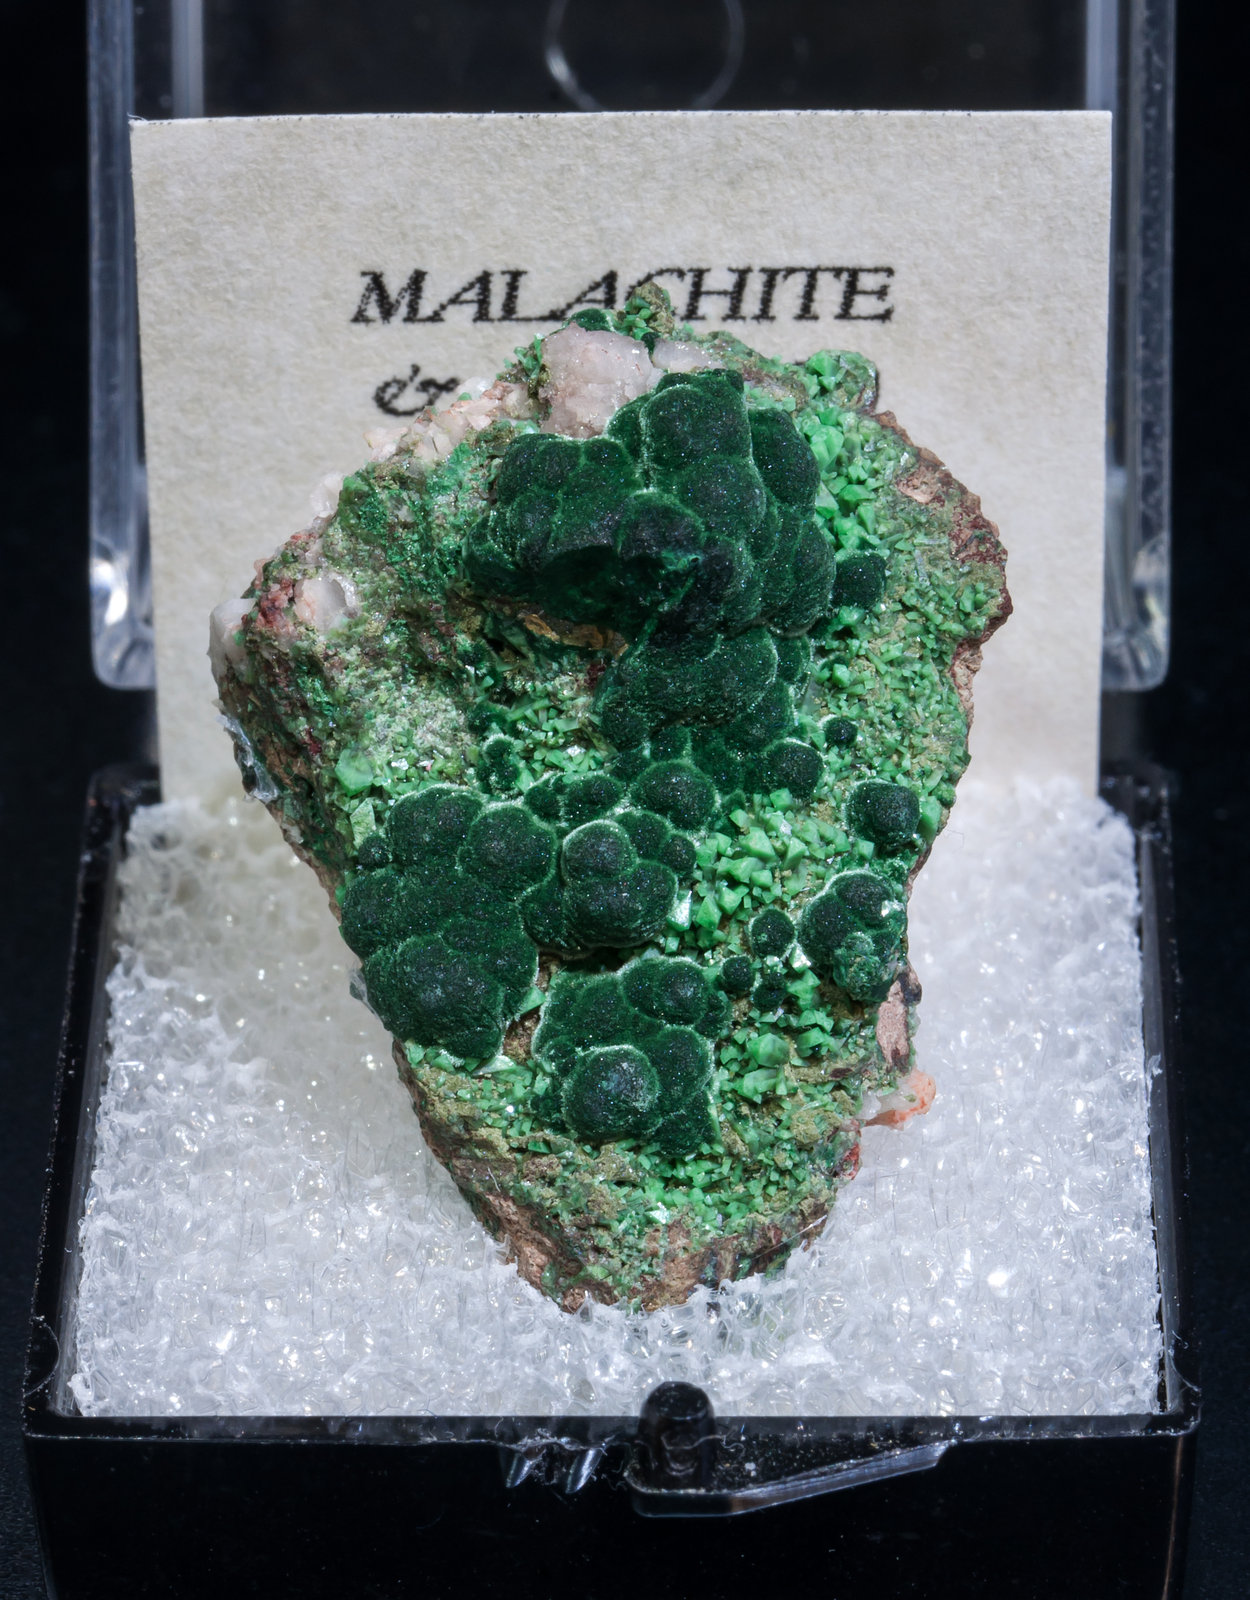 specimens/s_imagesAK8/Malachite-TK11AK8f1.jpg